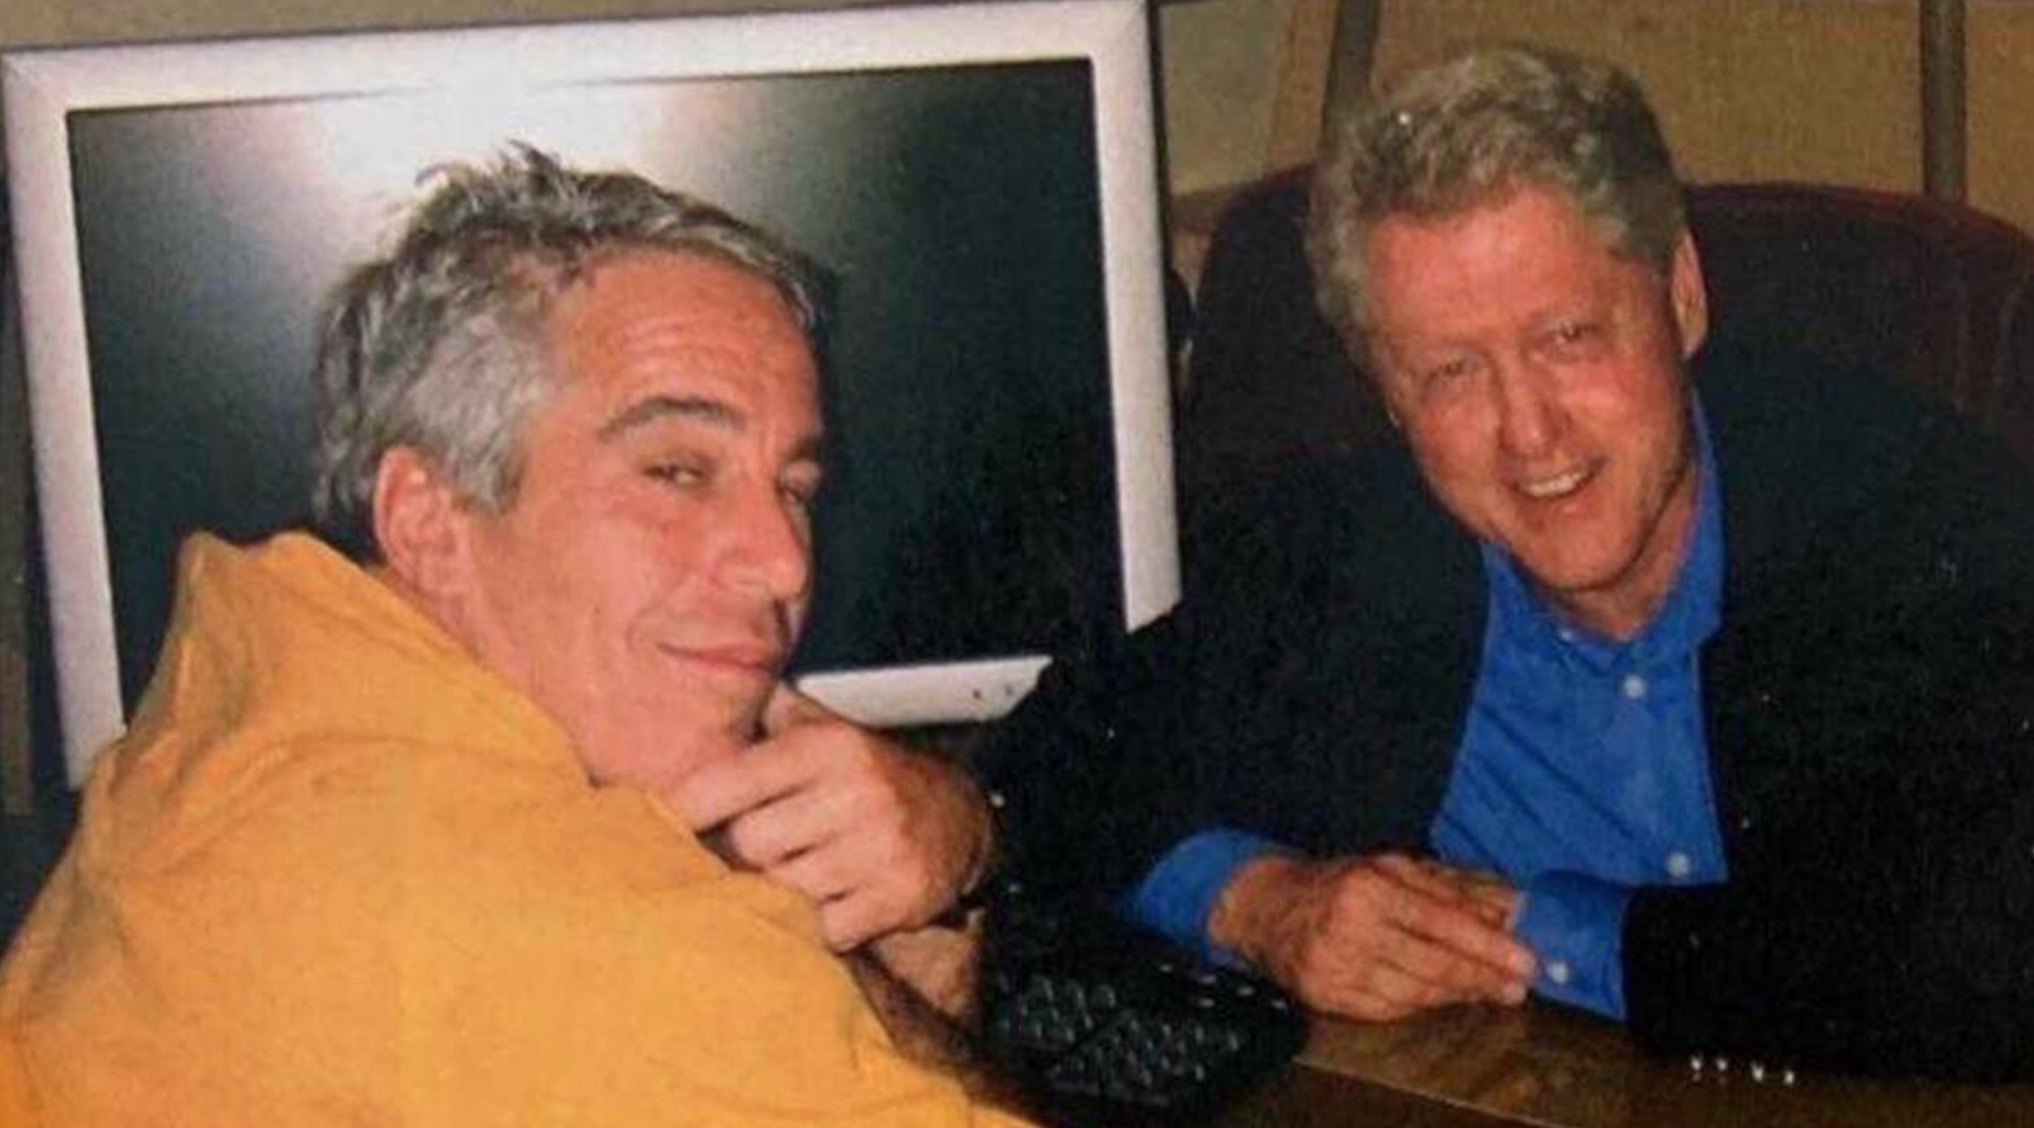 Der ehemalige US-Präsident Bill Clinton wird in den Dokumenten genannt (im Bild mit Epstein)